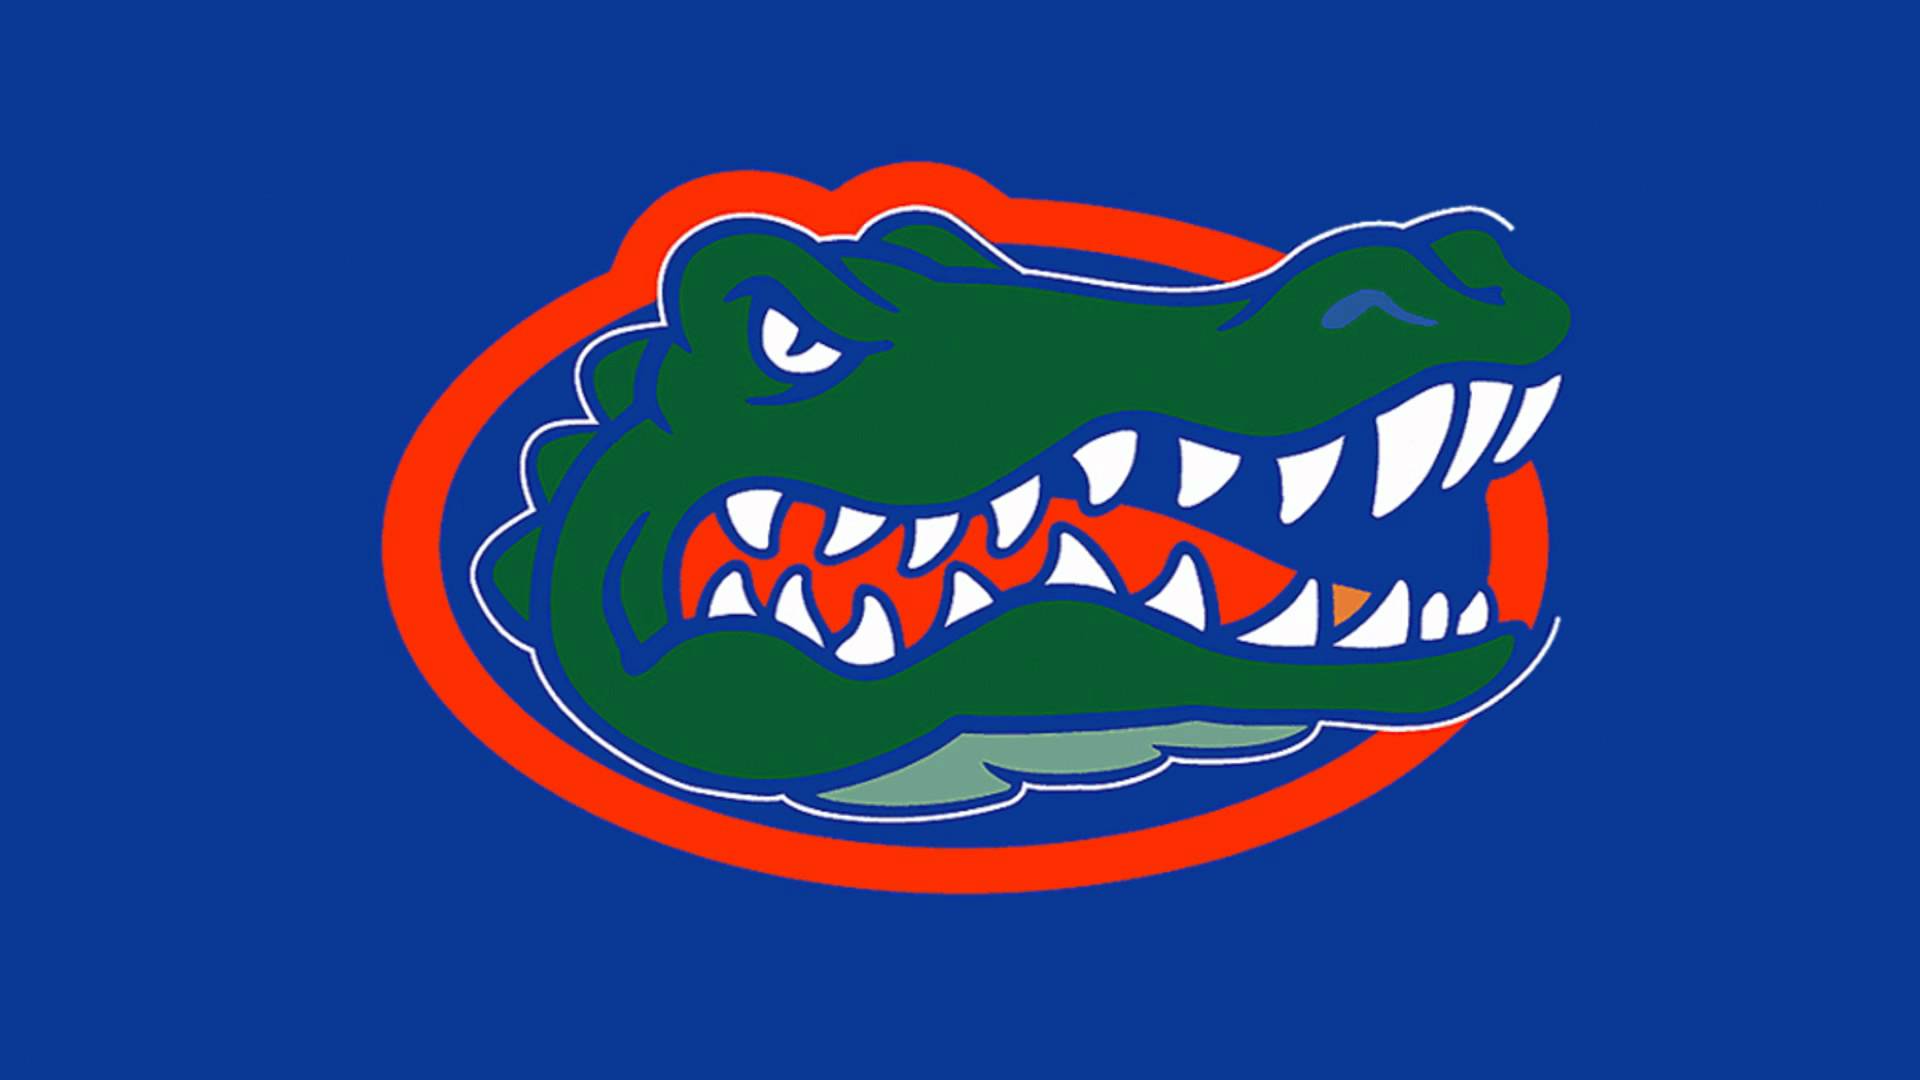 UF Gator Logo - Florida gators Logos